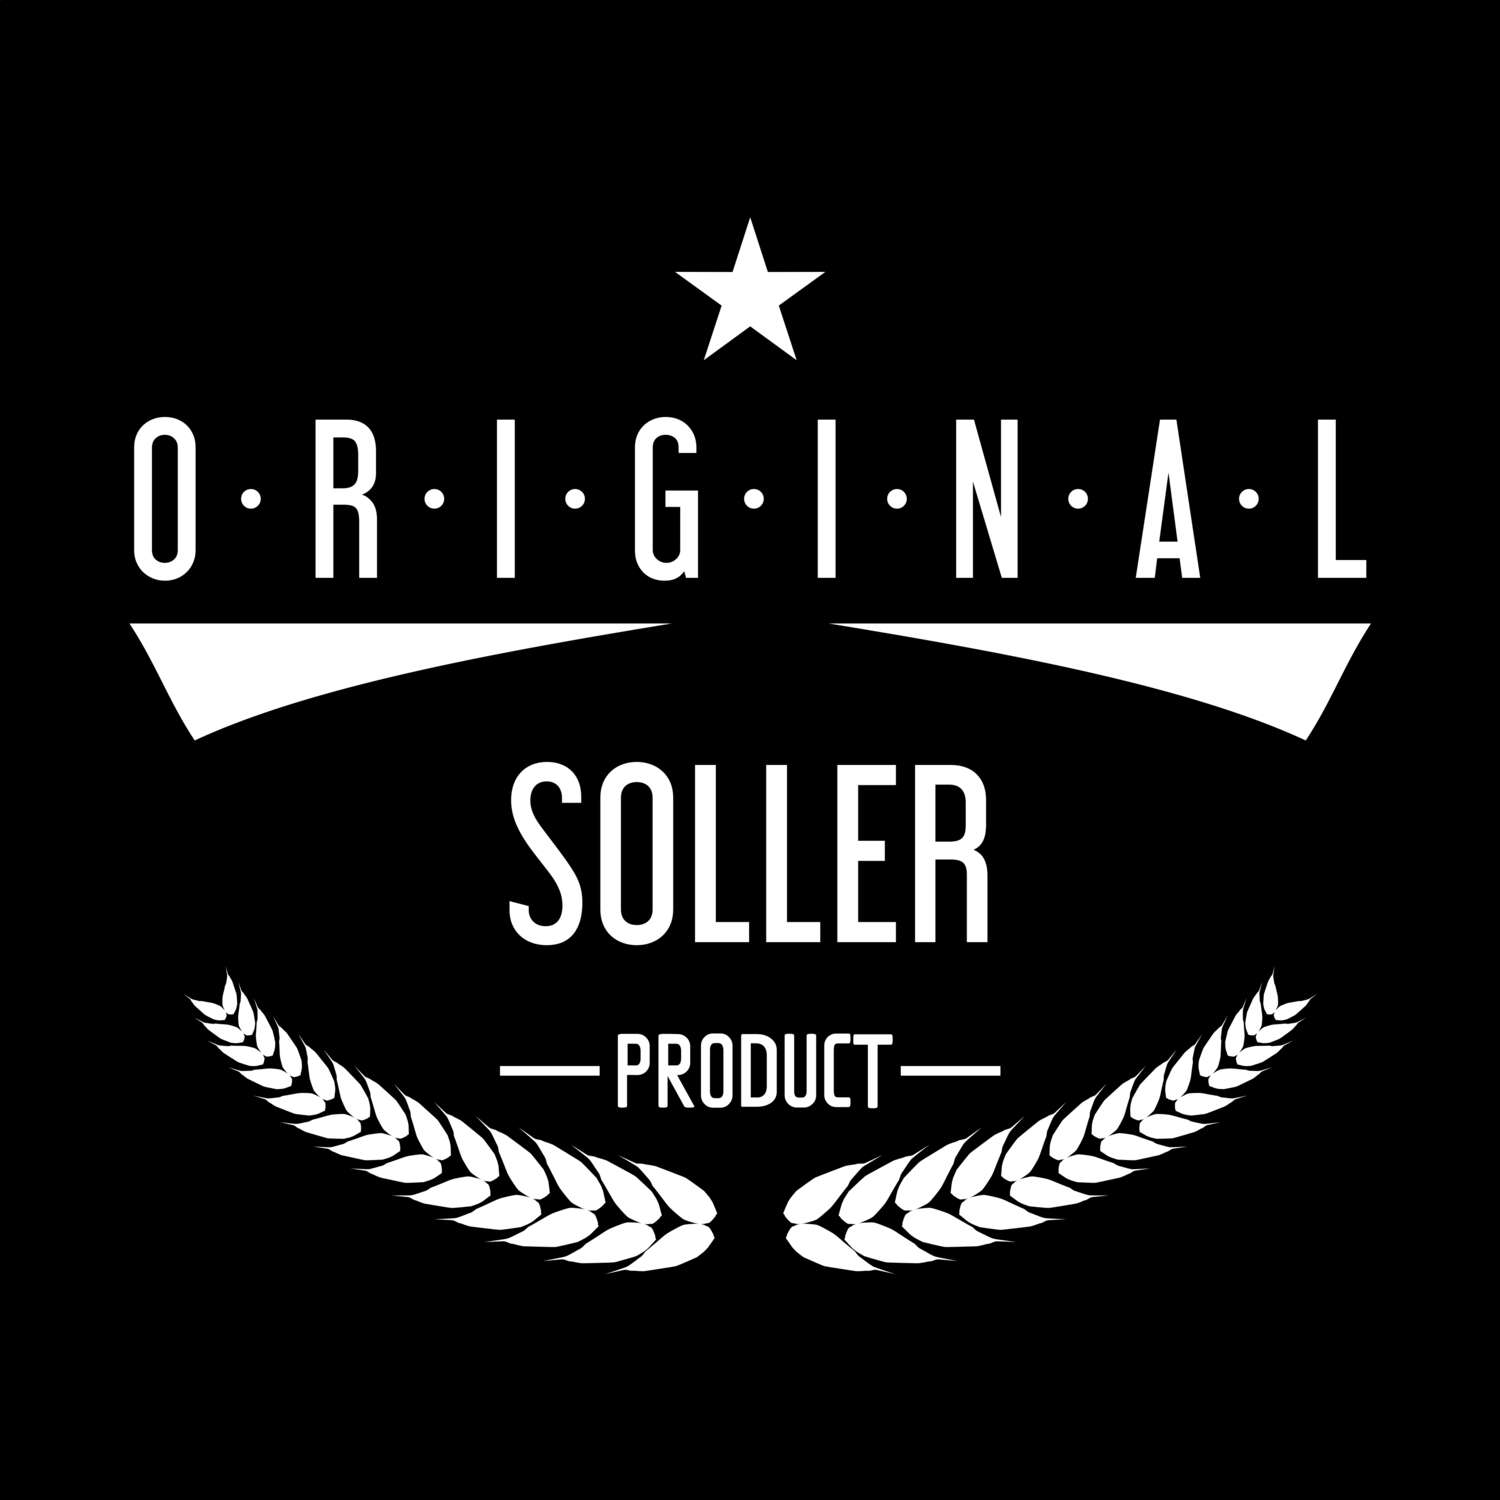 Soller T-Shirt »Original Product«